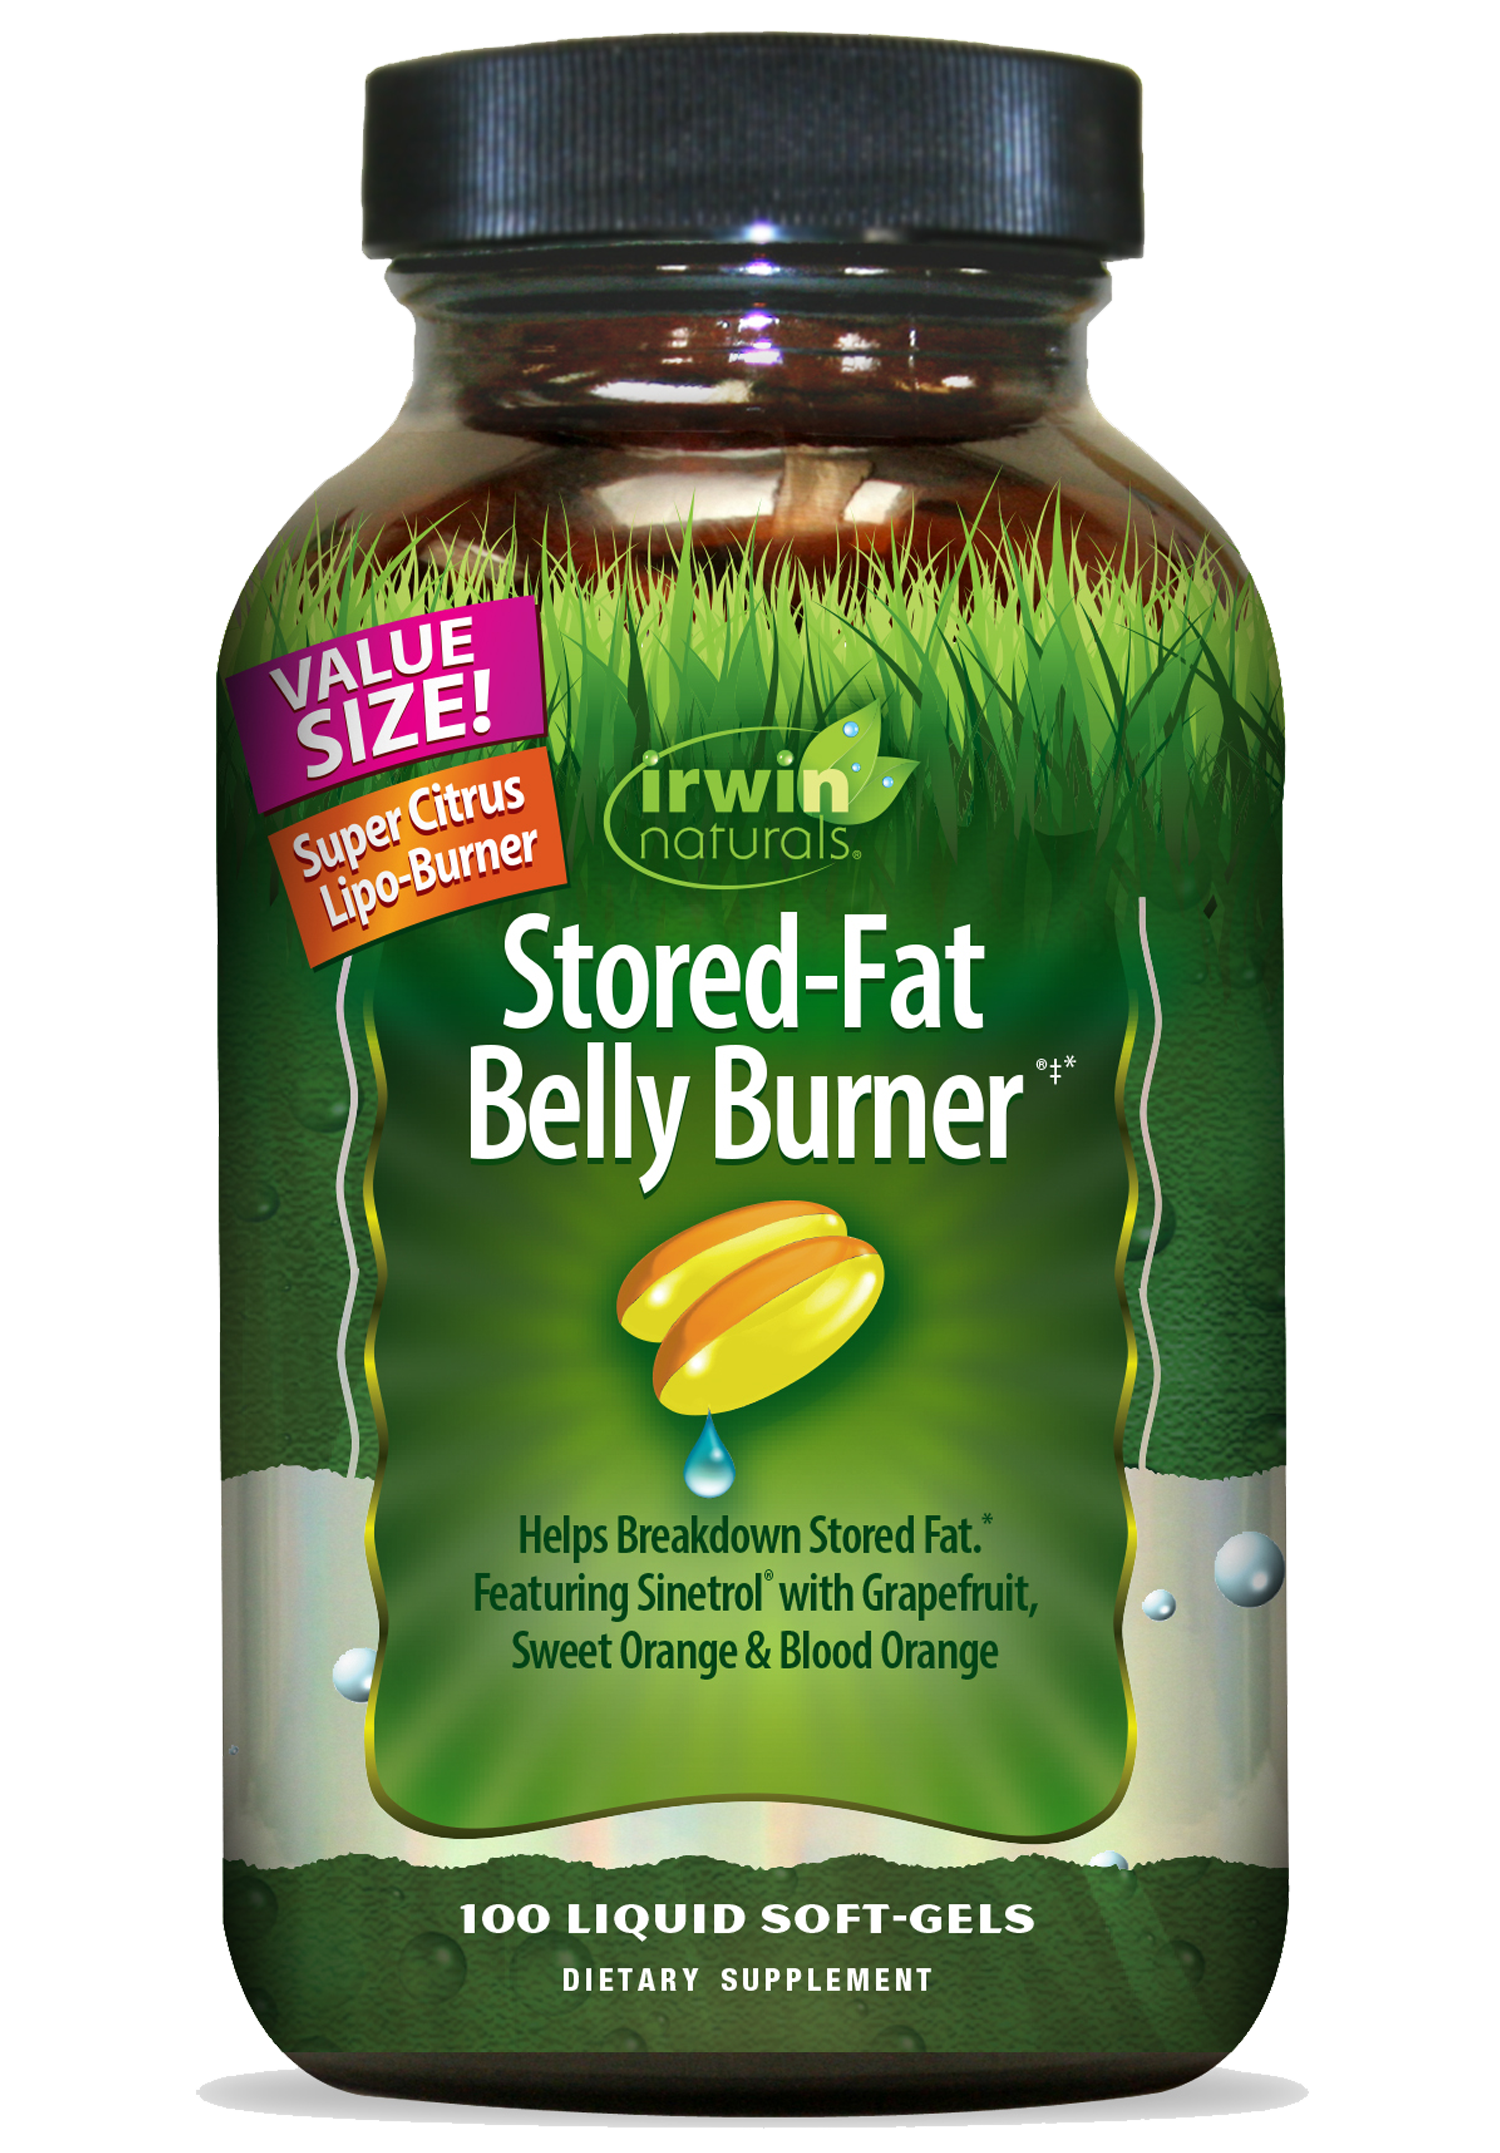 Stored_Fat_Belly_Burner_Value-Size_Lipo_Burner